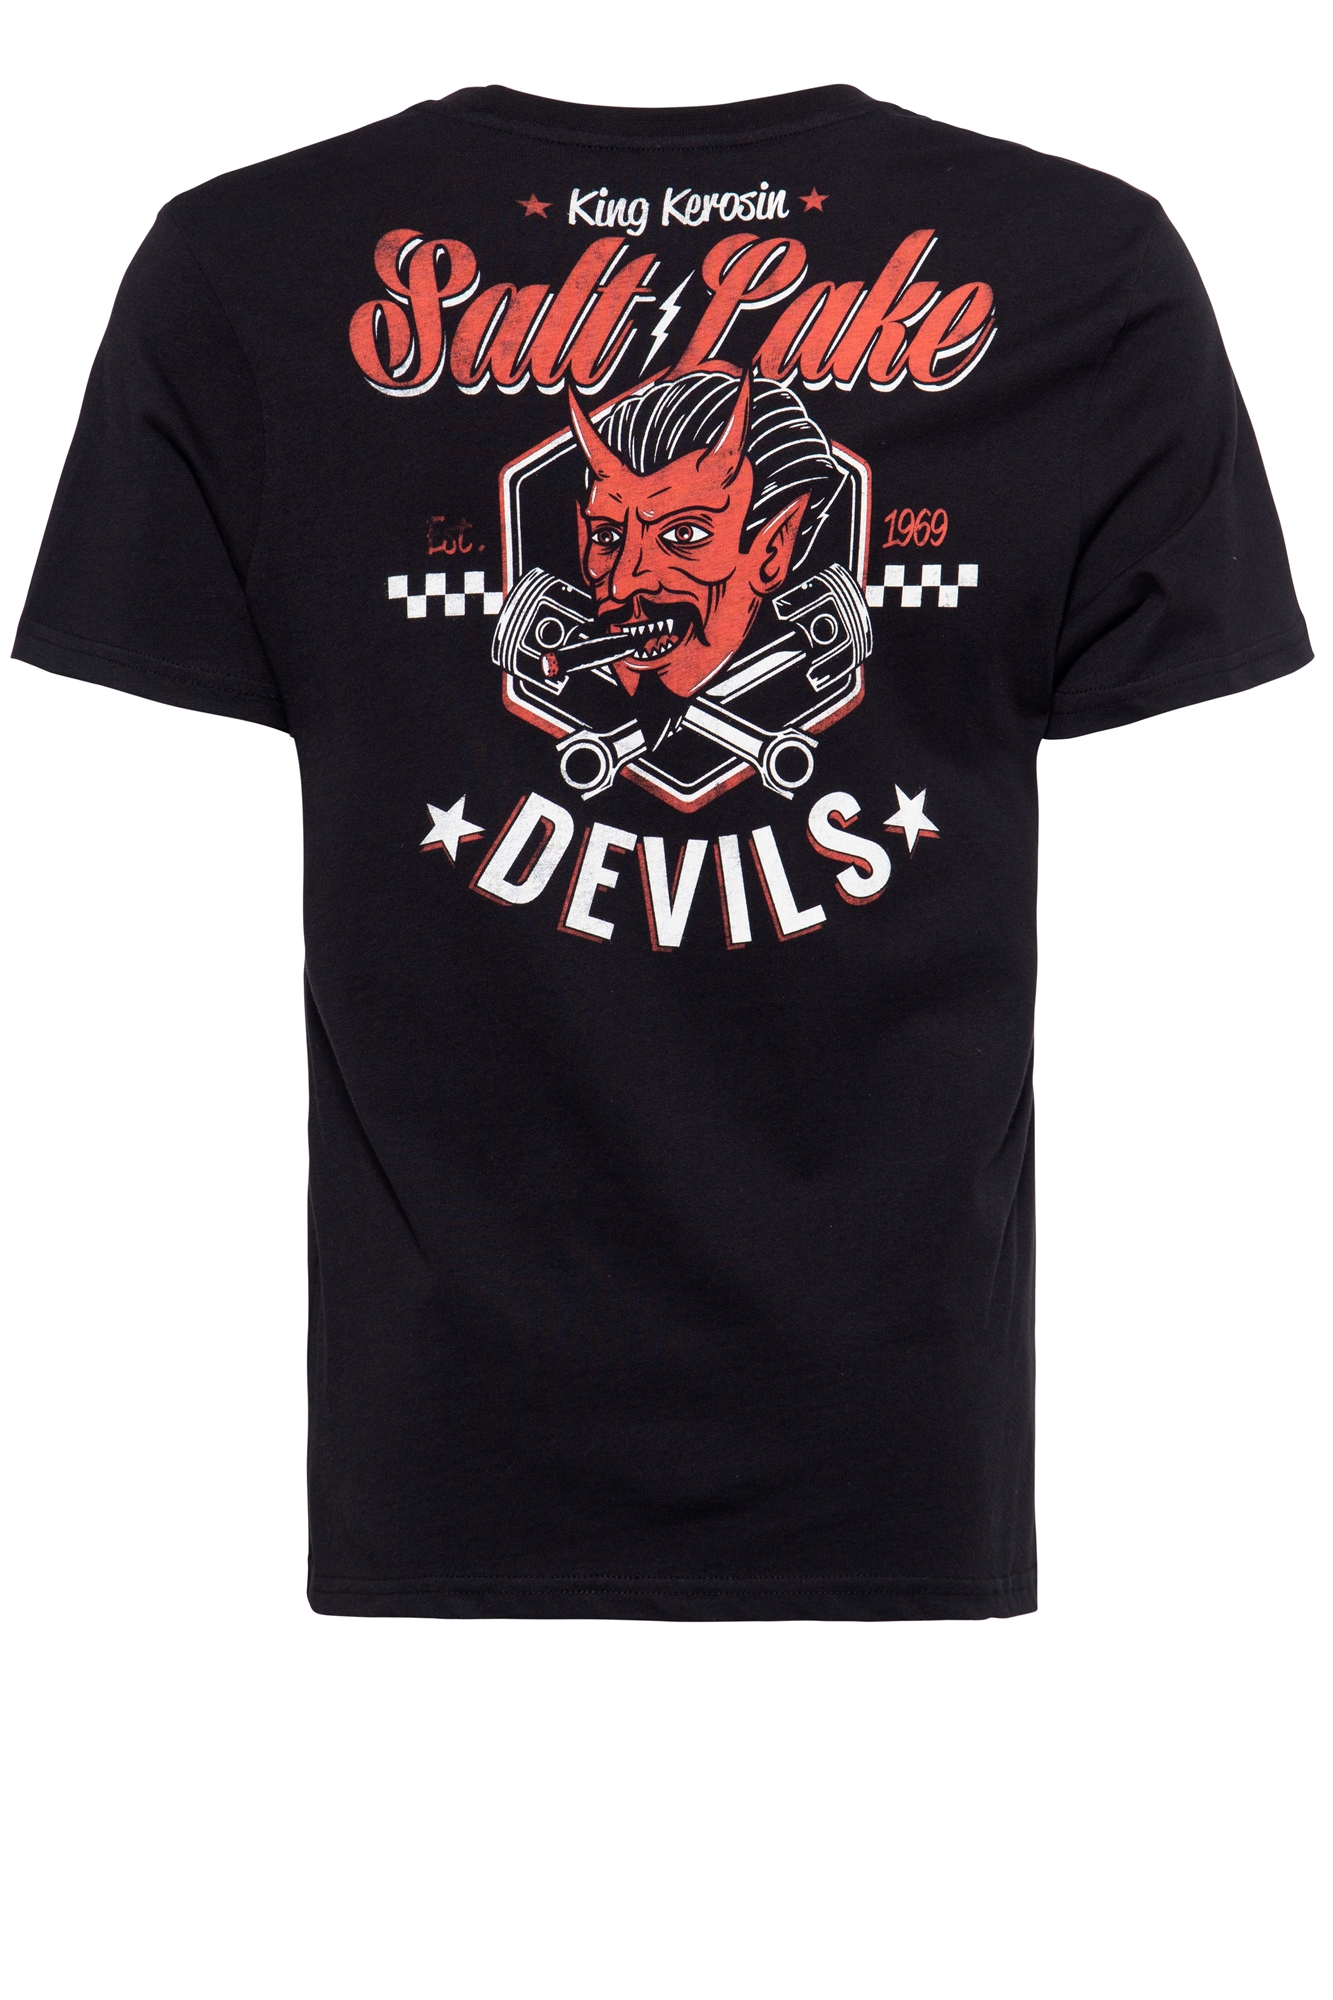 King Kerosin T-Shirt - Salt Lake Devils L